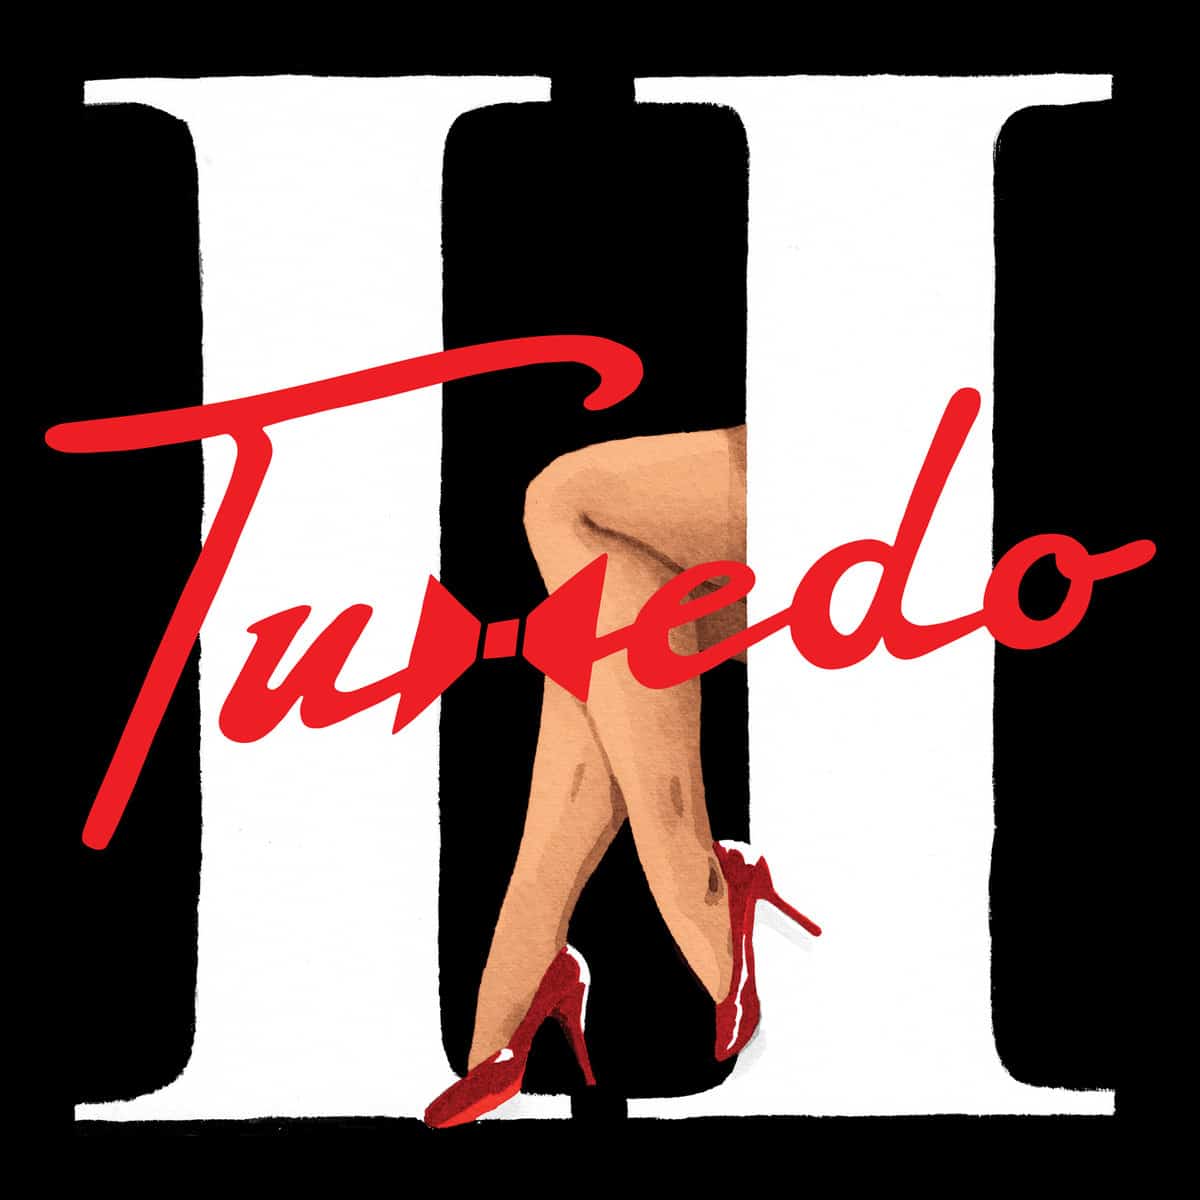 Tuxedo (Mayer Hawthorne & Jake One) - "Tuxedo II" (Release) & Tour Dates